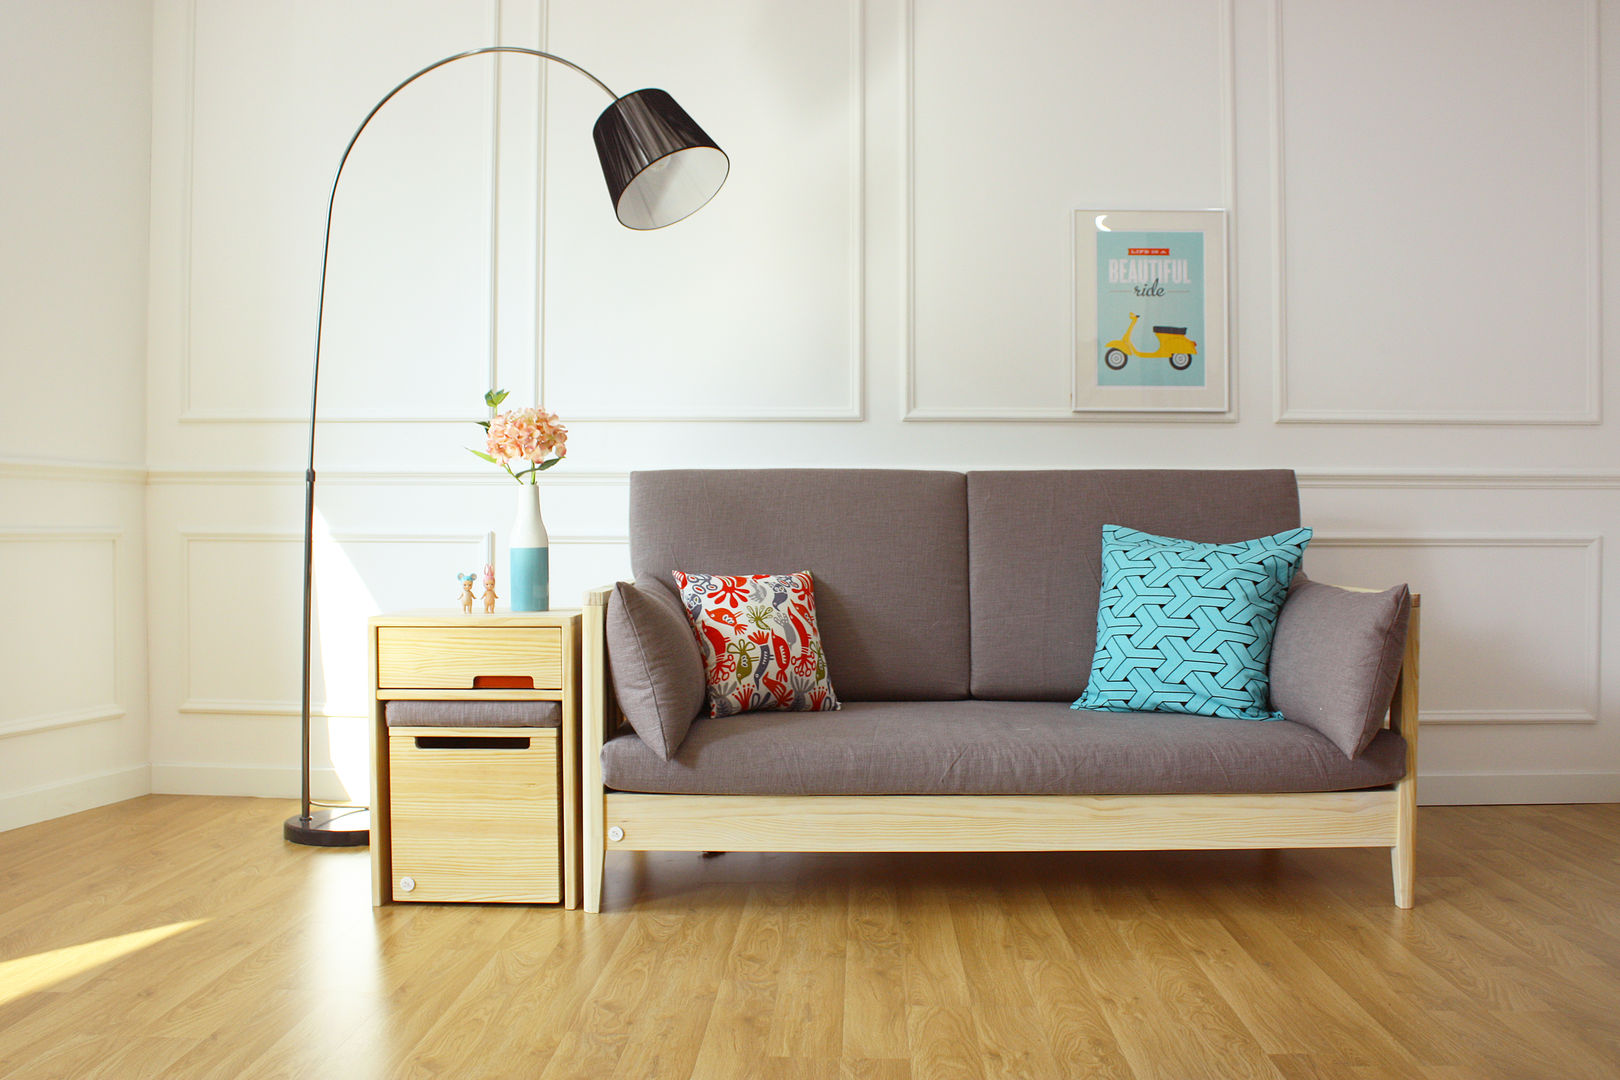 변형이 가능한 아동가구 끌렘 입니다., 끌렘(KKLEM) 끌렘(KKLEM) Modern living room Sofas & armchairs